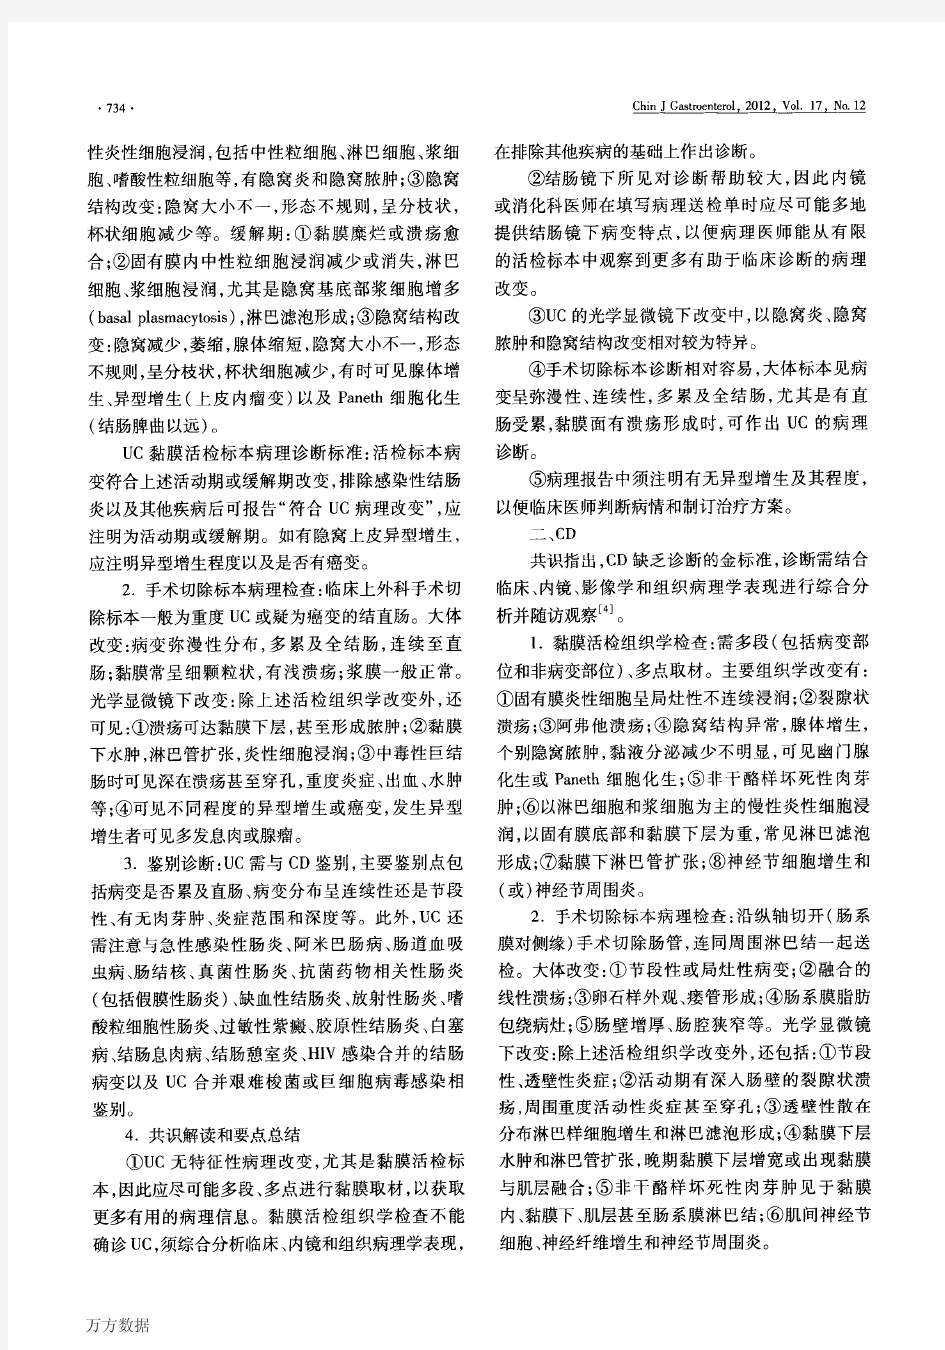 炎症性肠病诊断与治疗的共识意见2012年·广州病理诊断部分解读